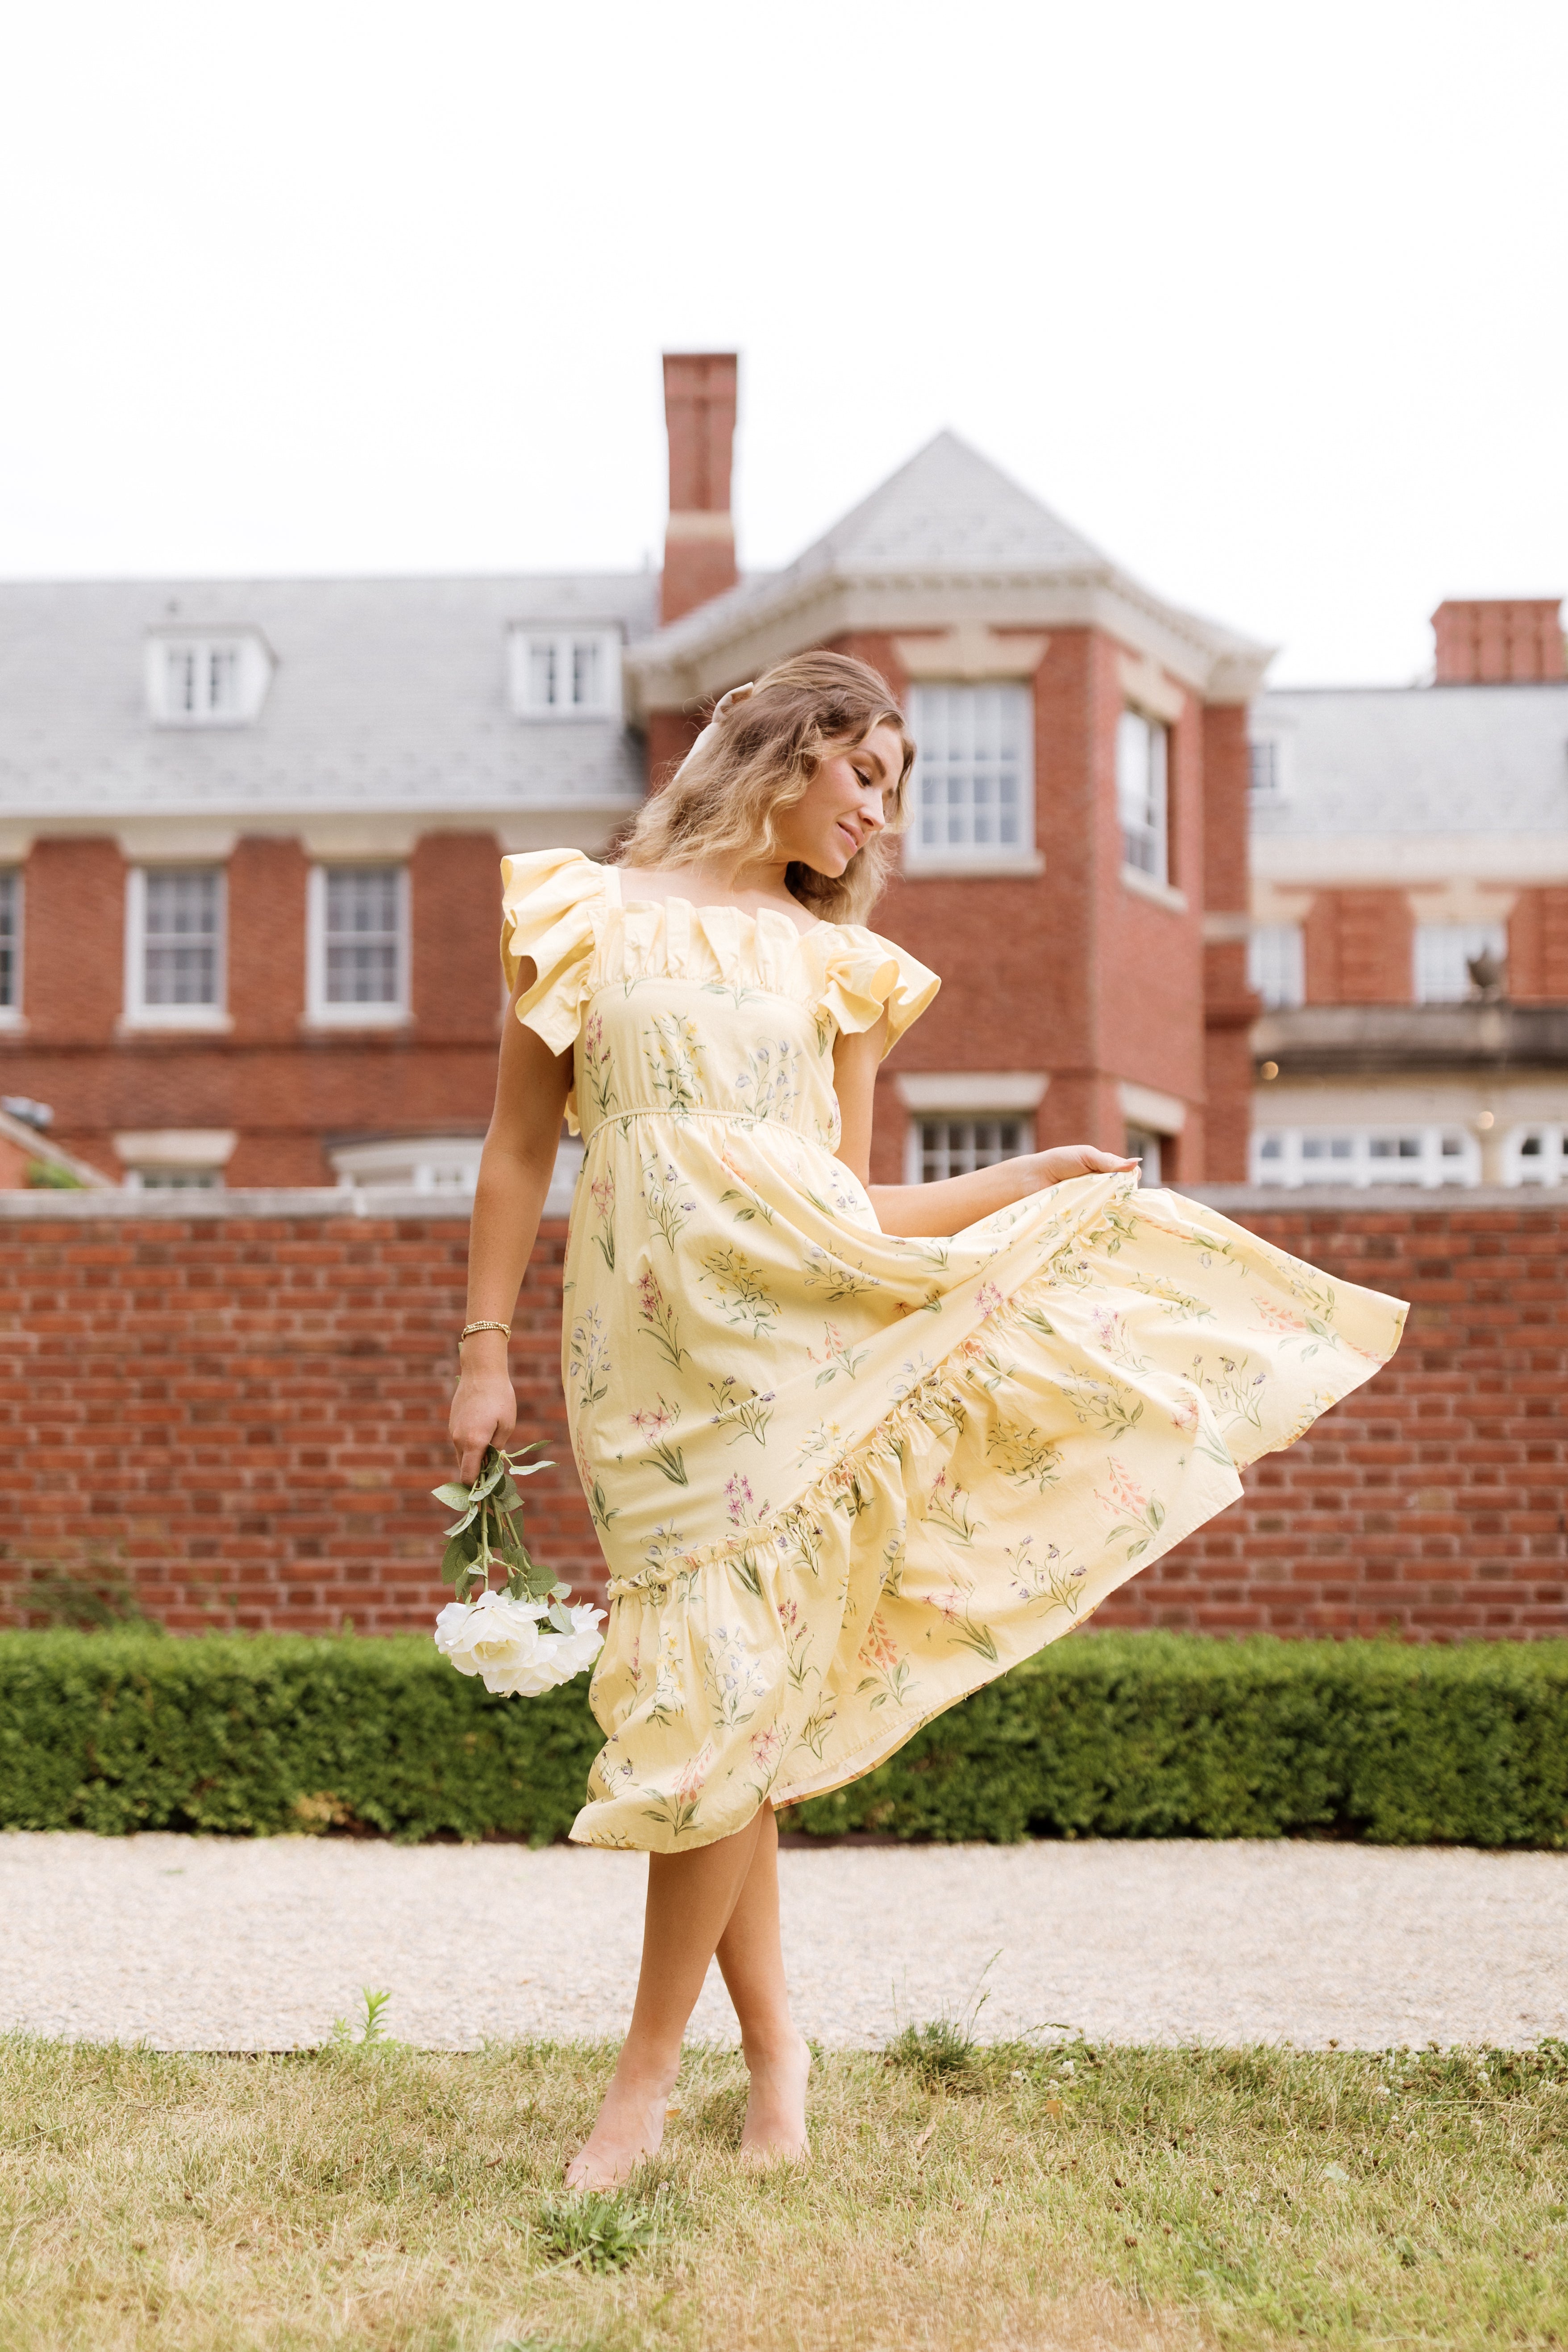 The Elle Dress by Floraison